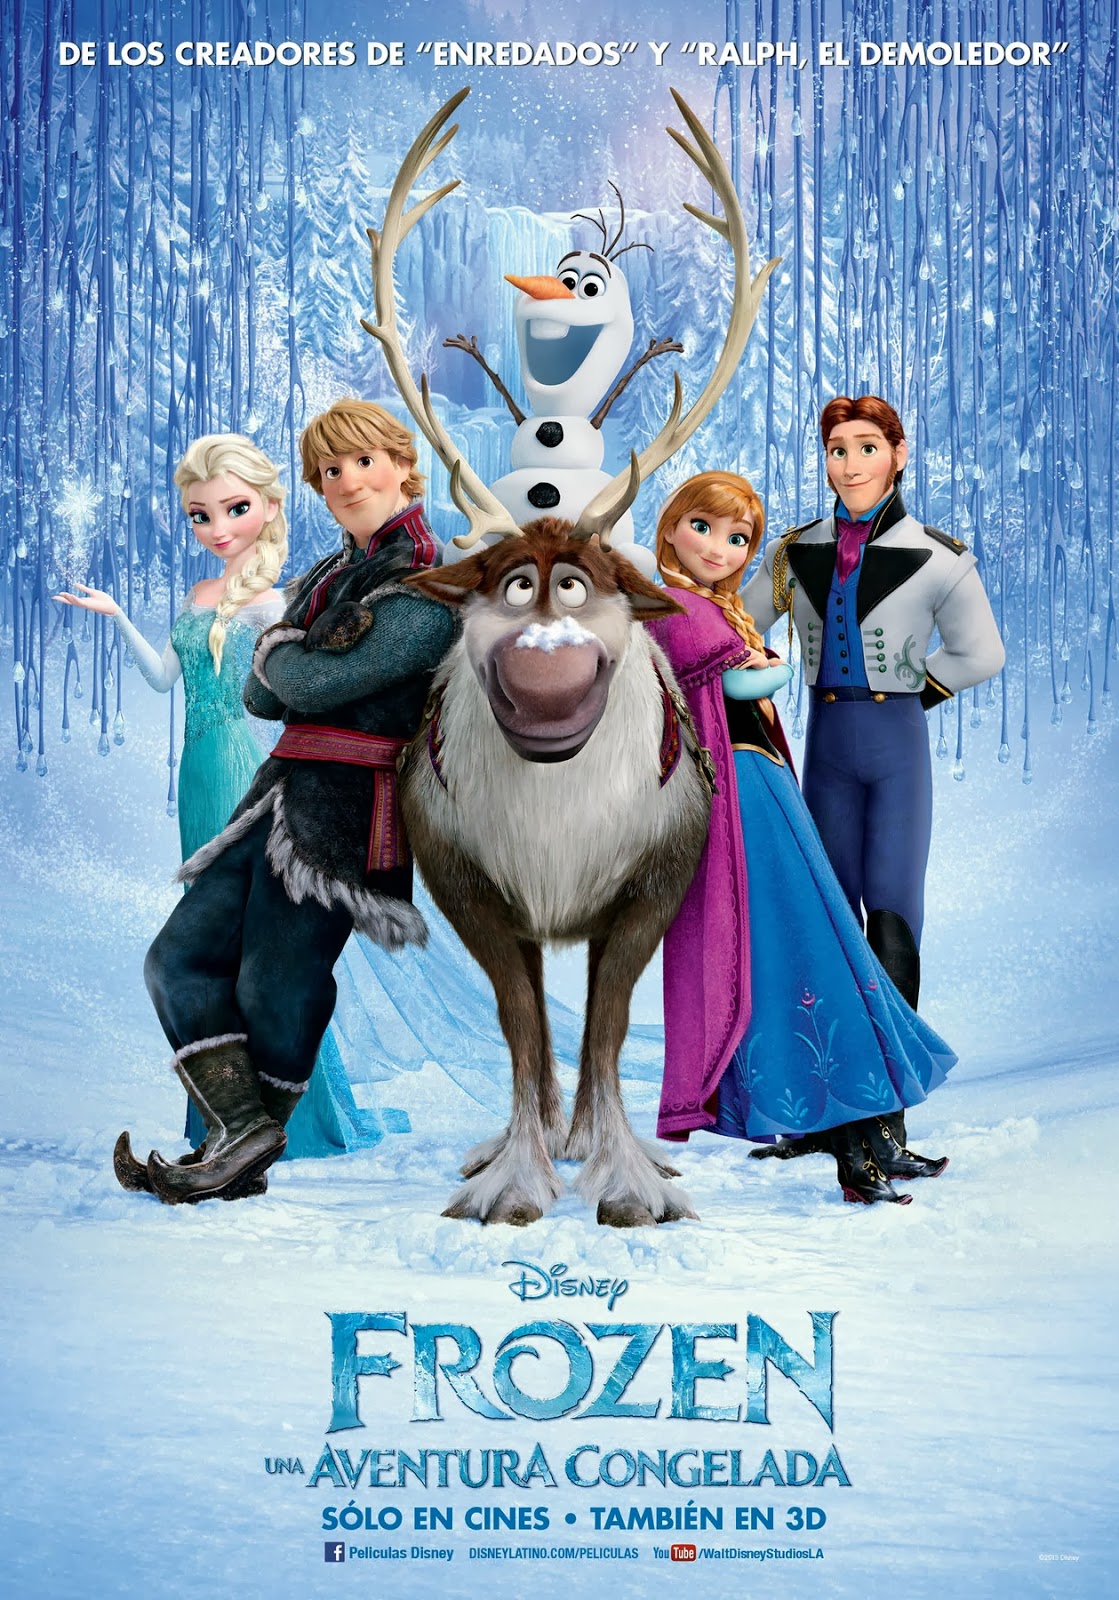 Disney decide retirar Sete Anões da história da Branca de Neve